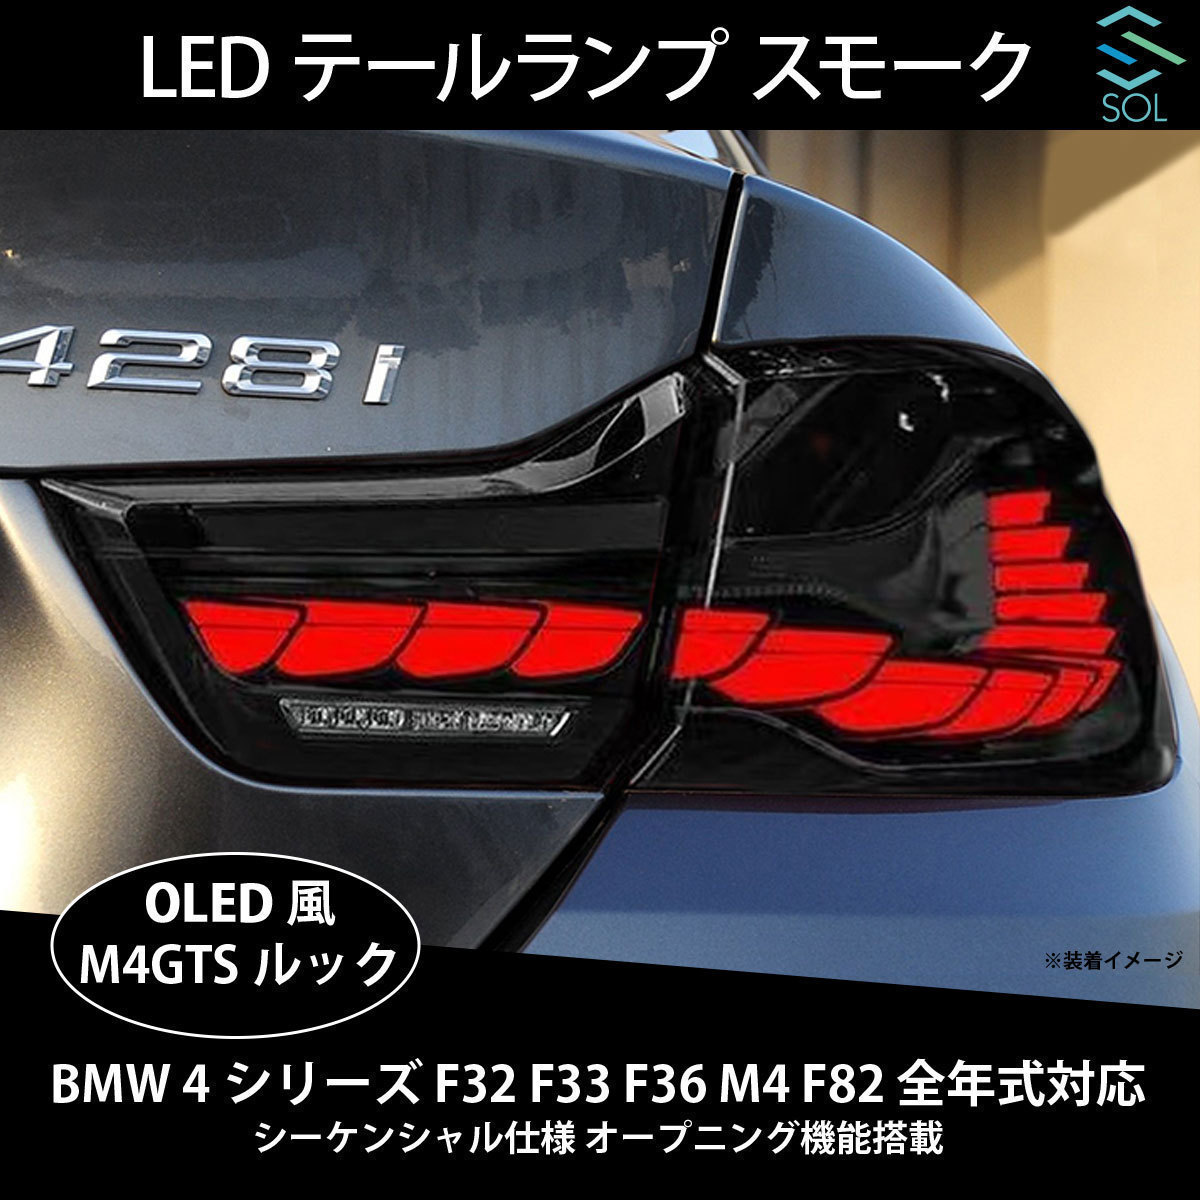 BMW 4シリーズ F32 F33 F36 M4 F82 シーケンシャル仕様 M4GTSルック 無料配達 LEDテールランプ スモーク 全年式対応 全品送料0円 オープニング機能搭載 OLED風